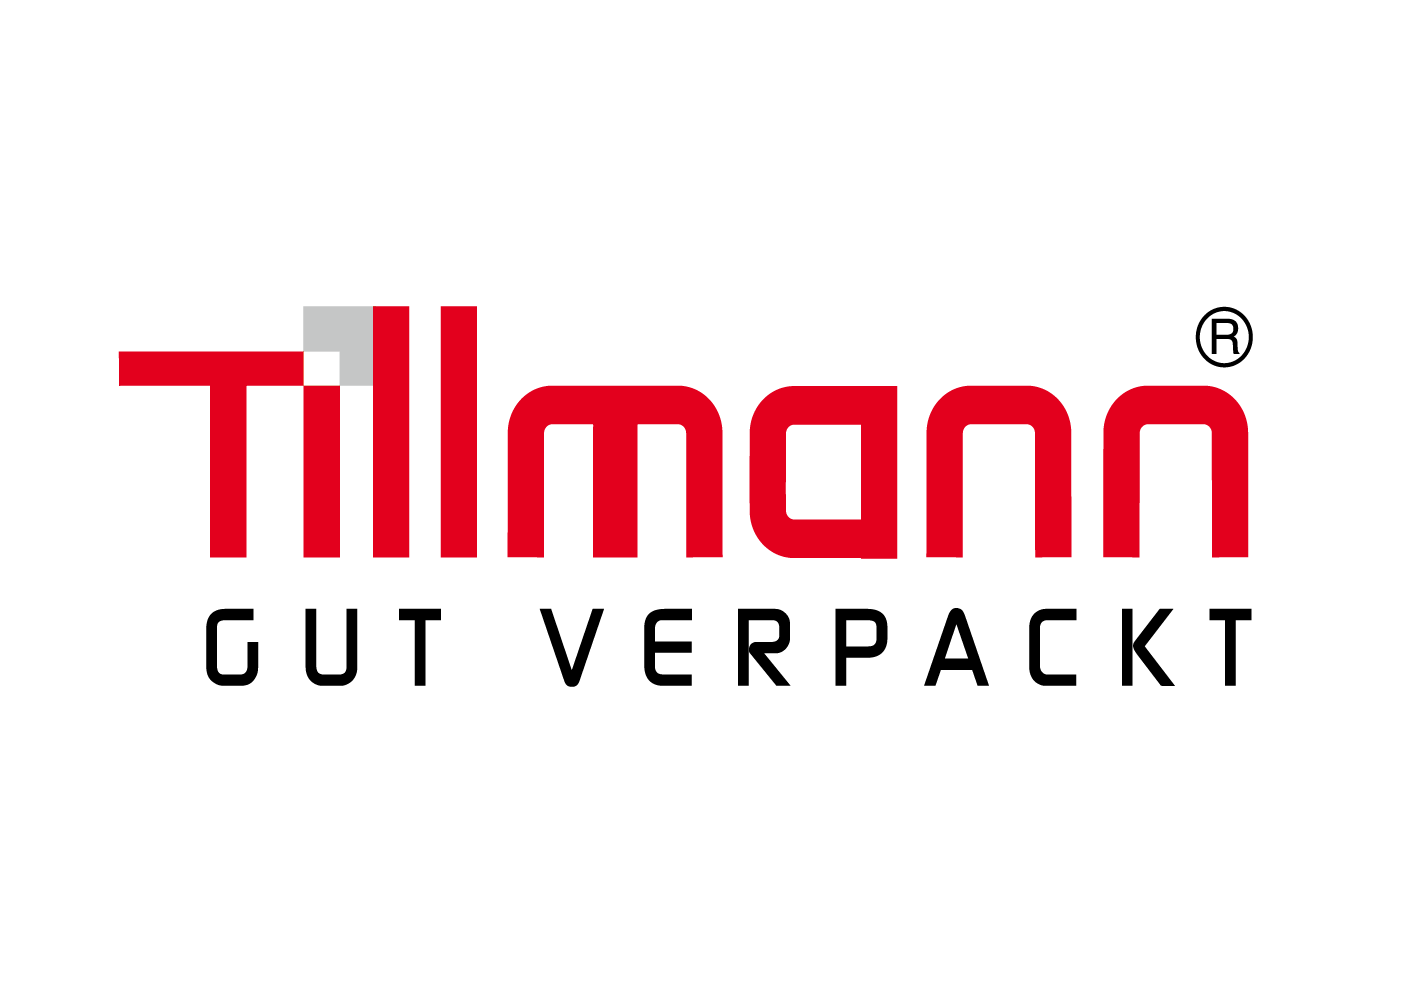 Tillmann Verpackungen GmbH